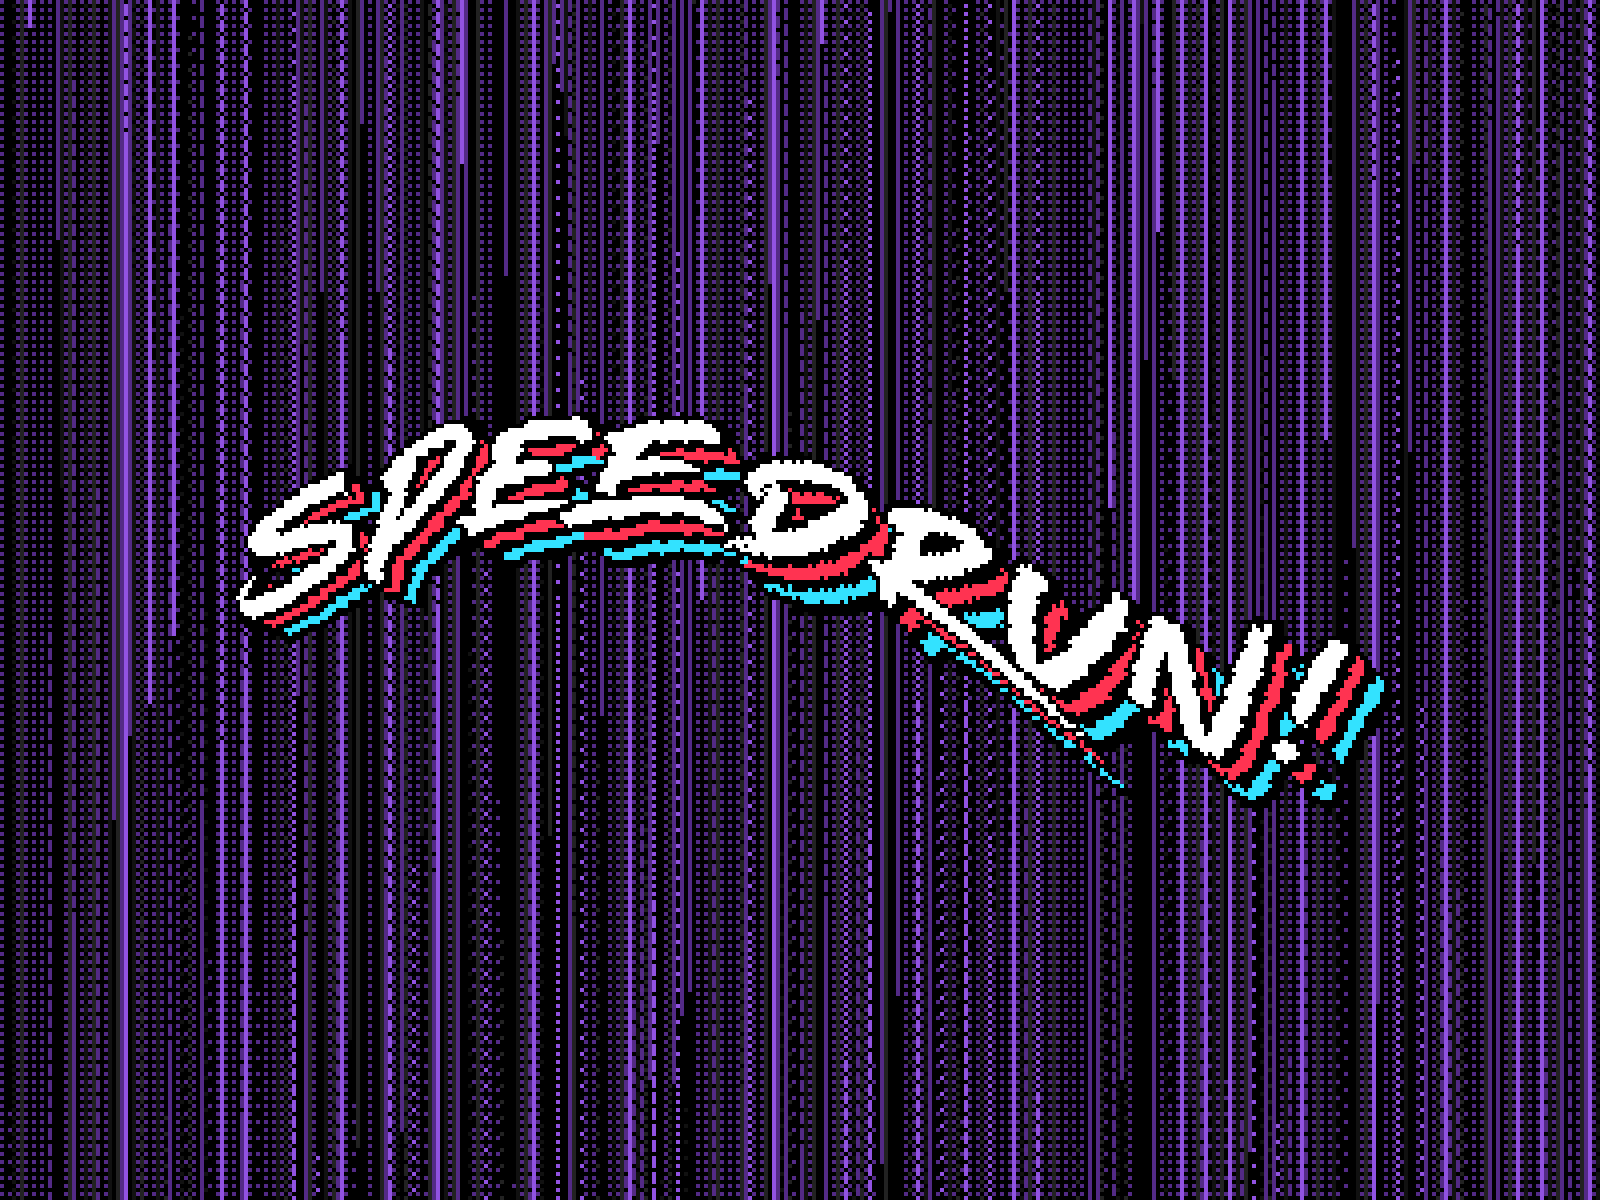 SpeedRun